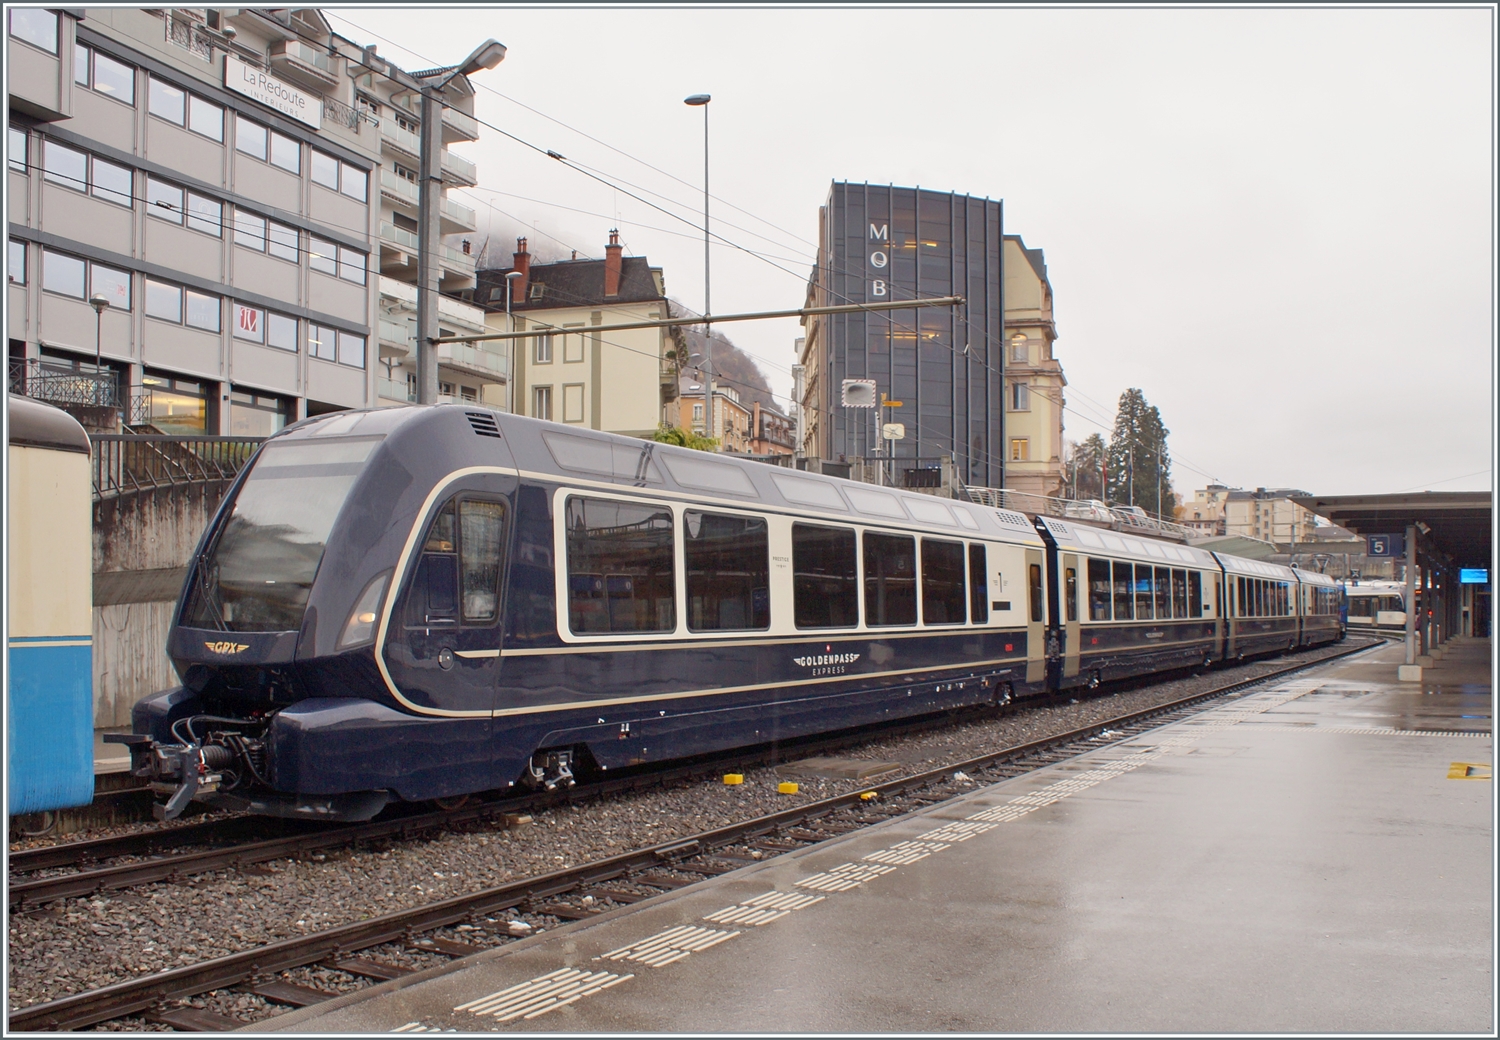 er MOB/BLS GPX (GoldenPassExpress) besteht z.Z aus nur vier Wagen; es wird interessant sein, wie das Angebot der direkten Verbindung angenommen wird, vorerst wird ja nur mit einem Zugspaar gefahren. 

Montreux, den 9. Dezember 